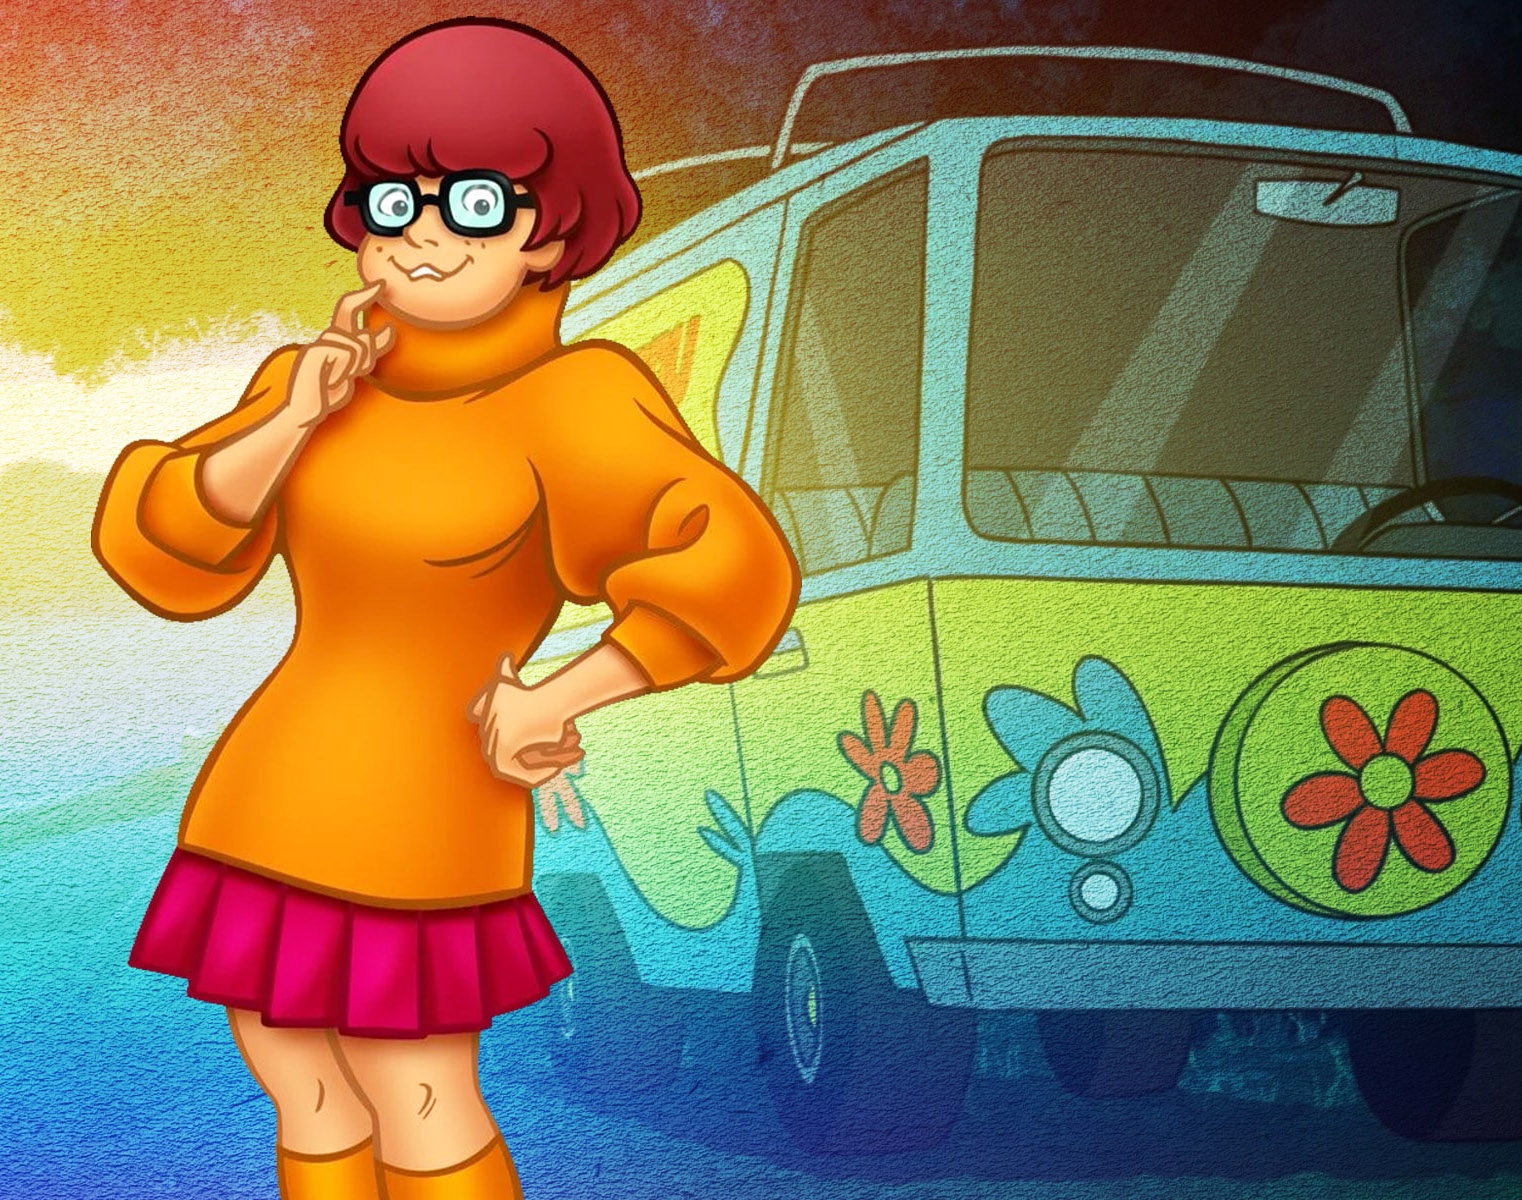 Velma, de 'Scooby-Doo' é lésbica, revela produtor da animação